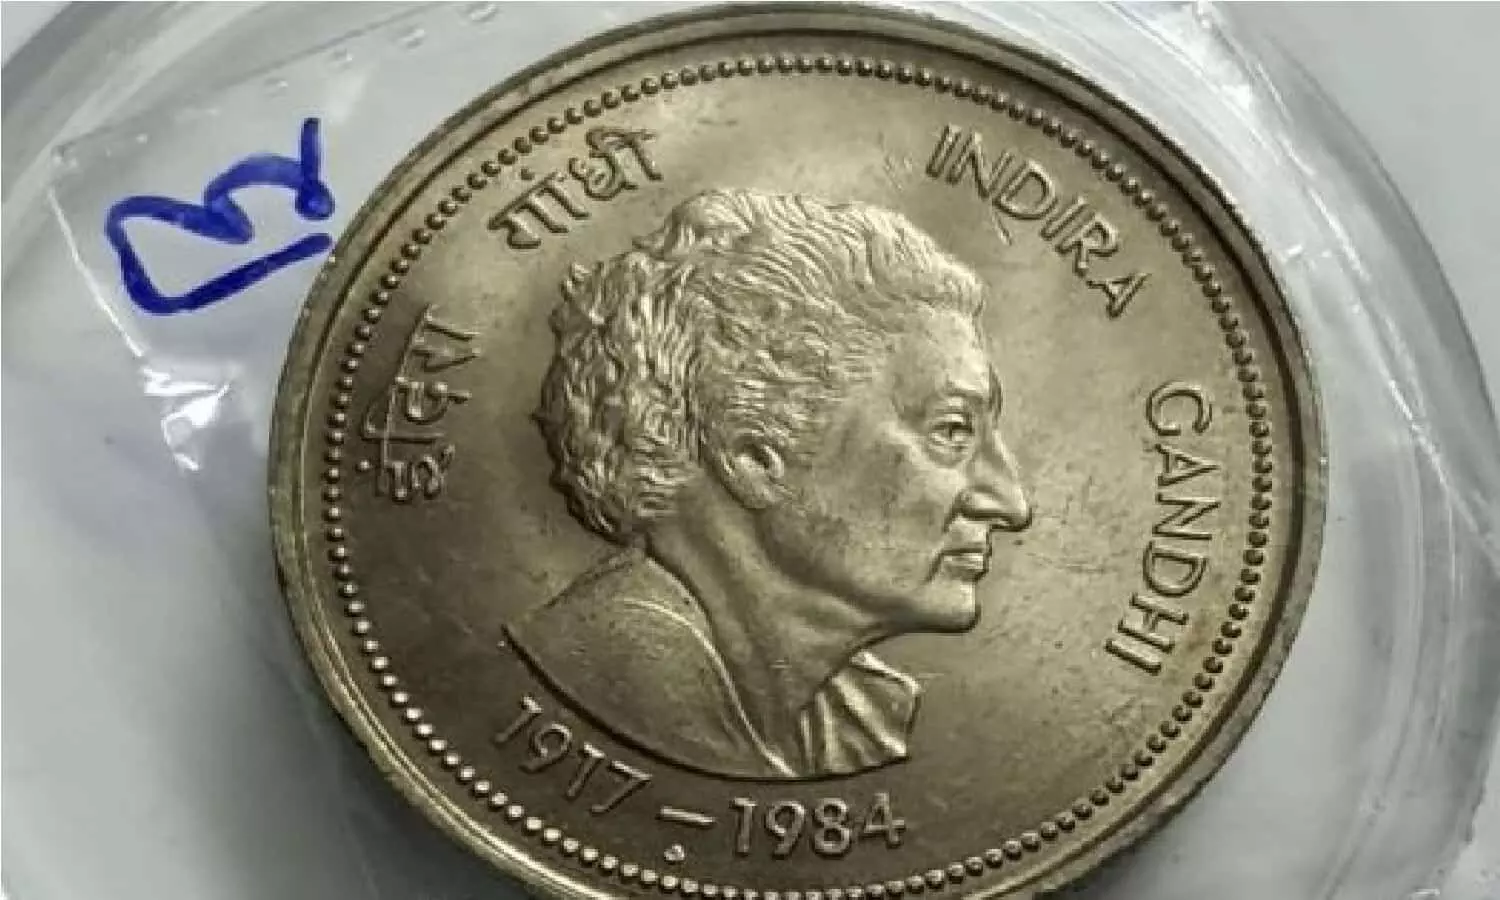 इंदिरा गांधी के फोटो वाला सिक्का आपको रोडपति से बना देगा करोडपति, दीवाली के पहले मिलेंगे इतने रूपए